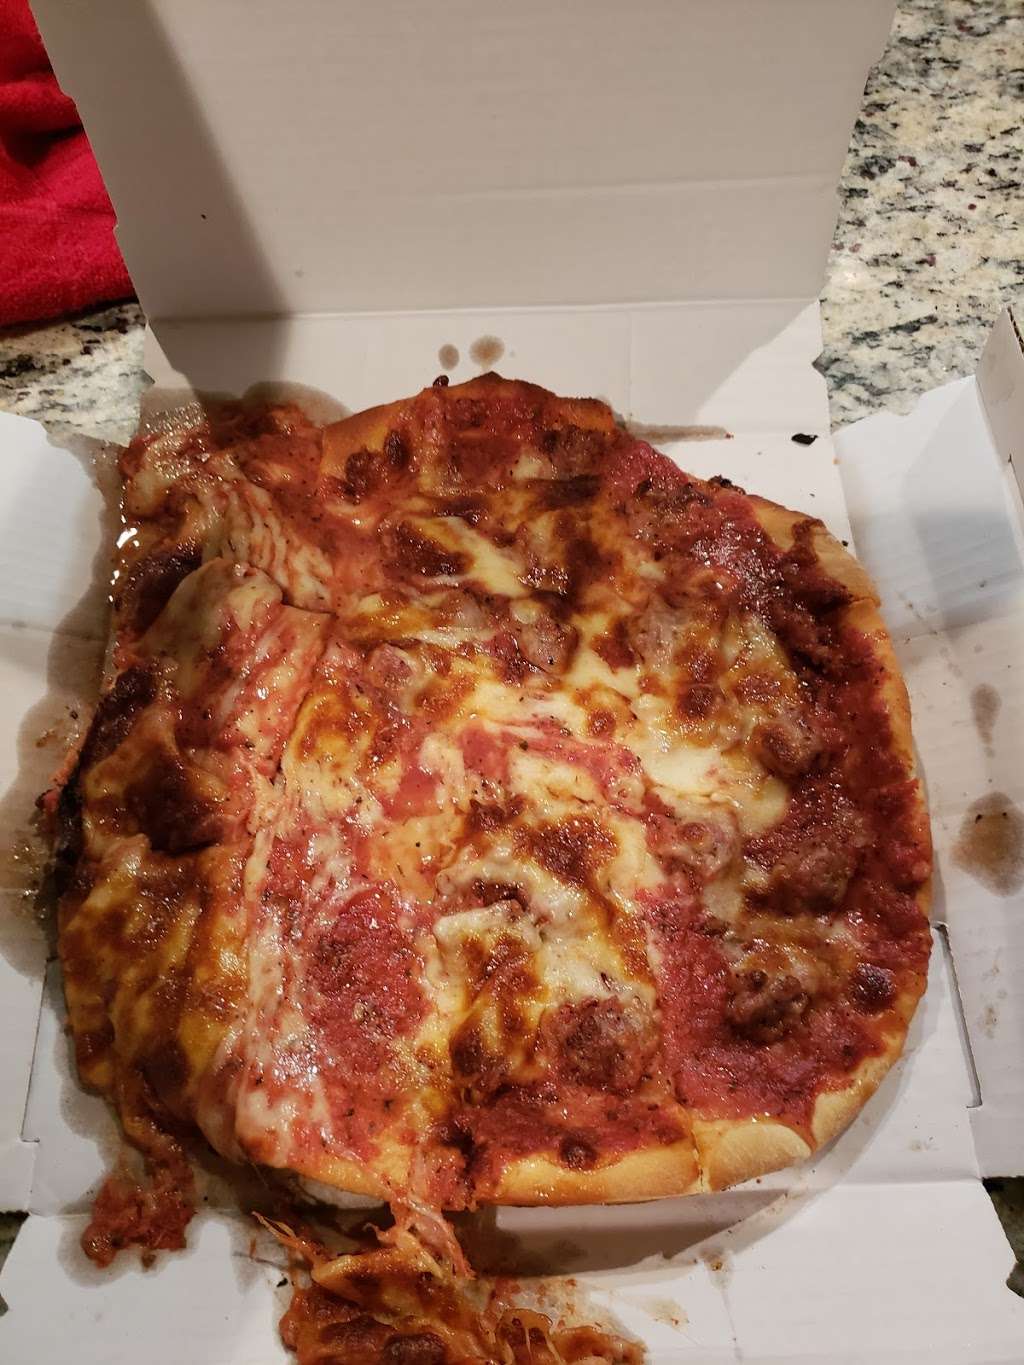 Arnies Pizza | 85 W 147th St, Harvey, IL 60426, USA | Phone: (708) 331-8000